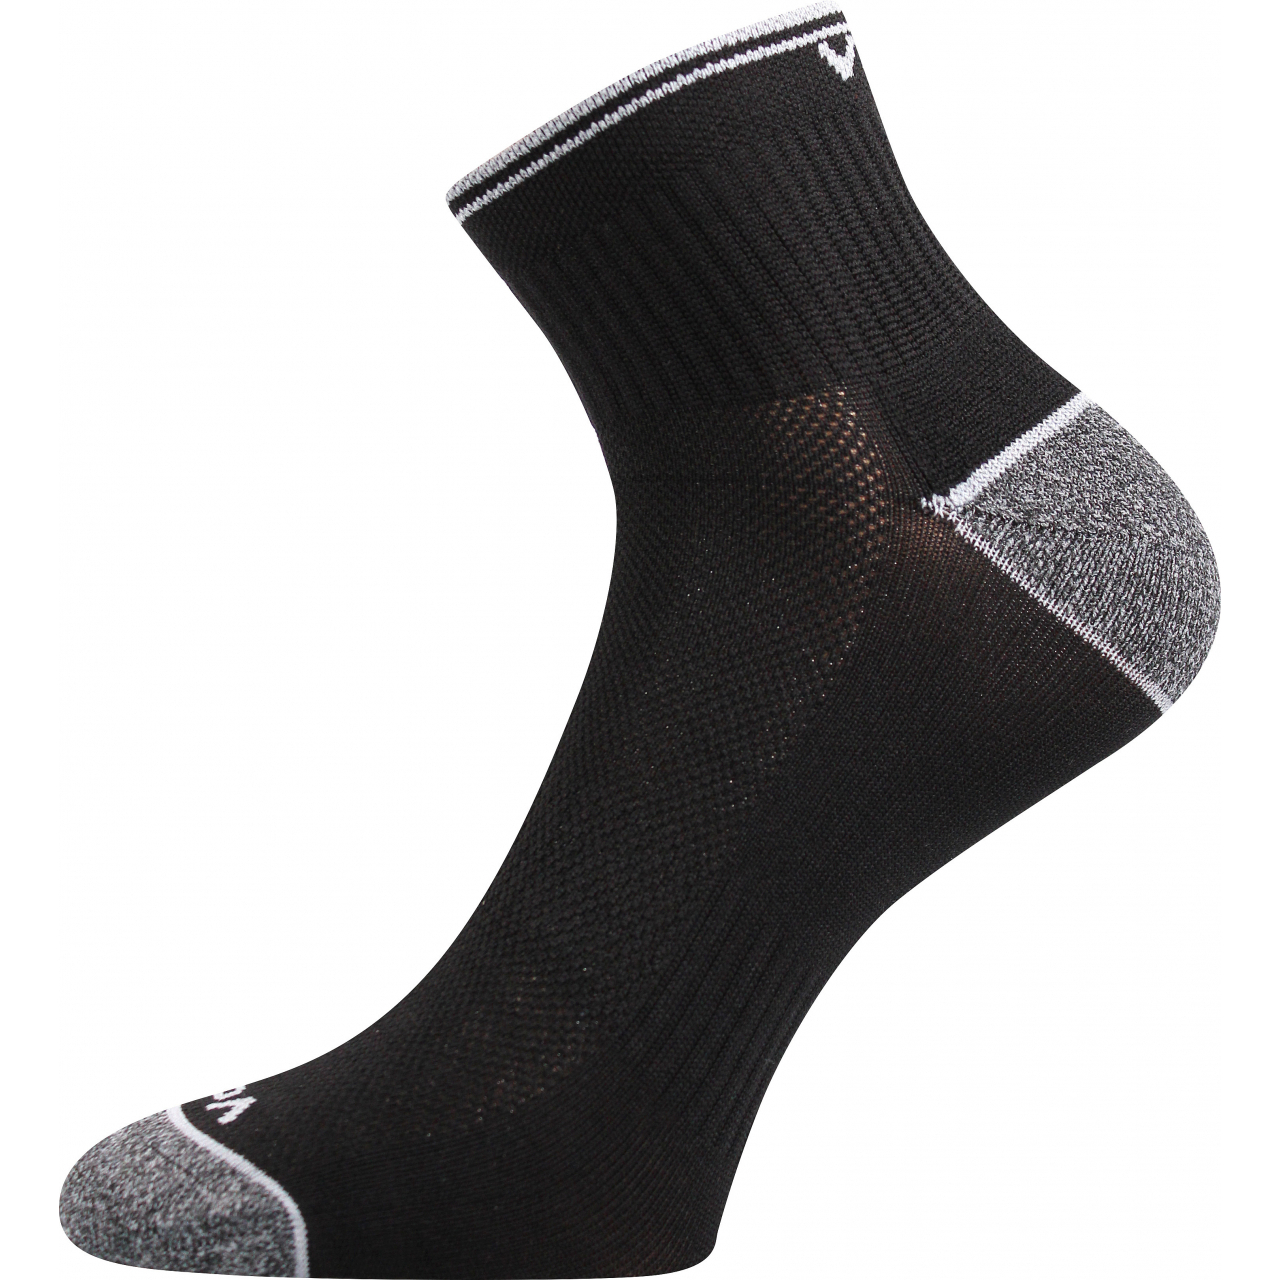 Ponožky unisex sportovní Voxx Ray - černé, 35-38